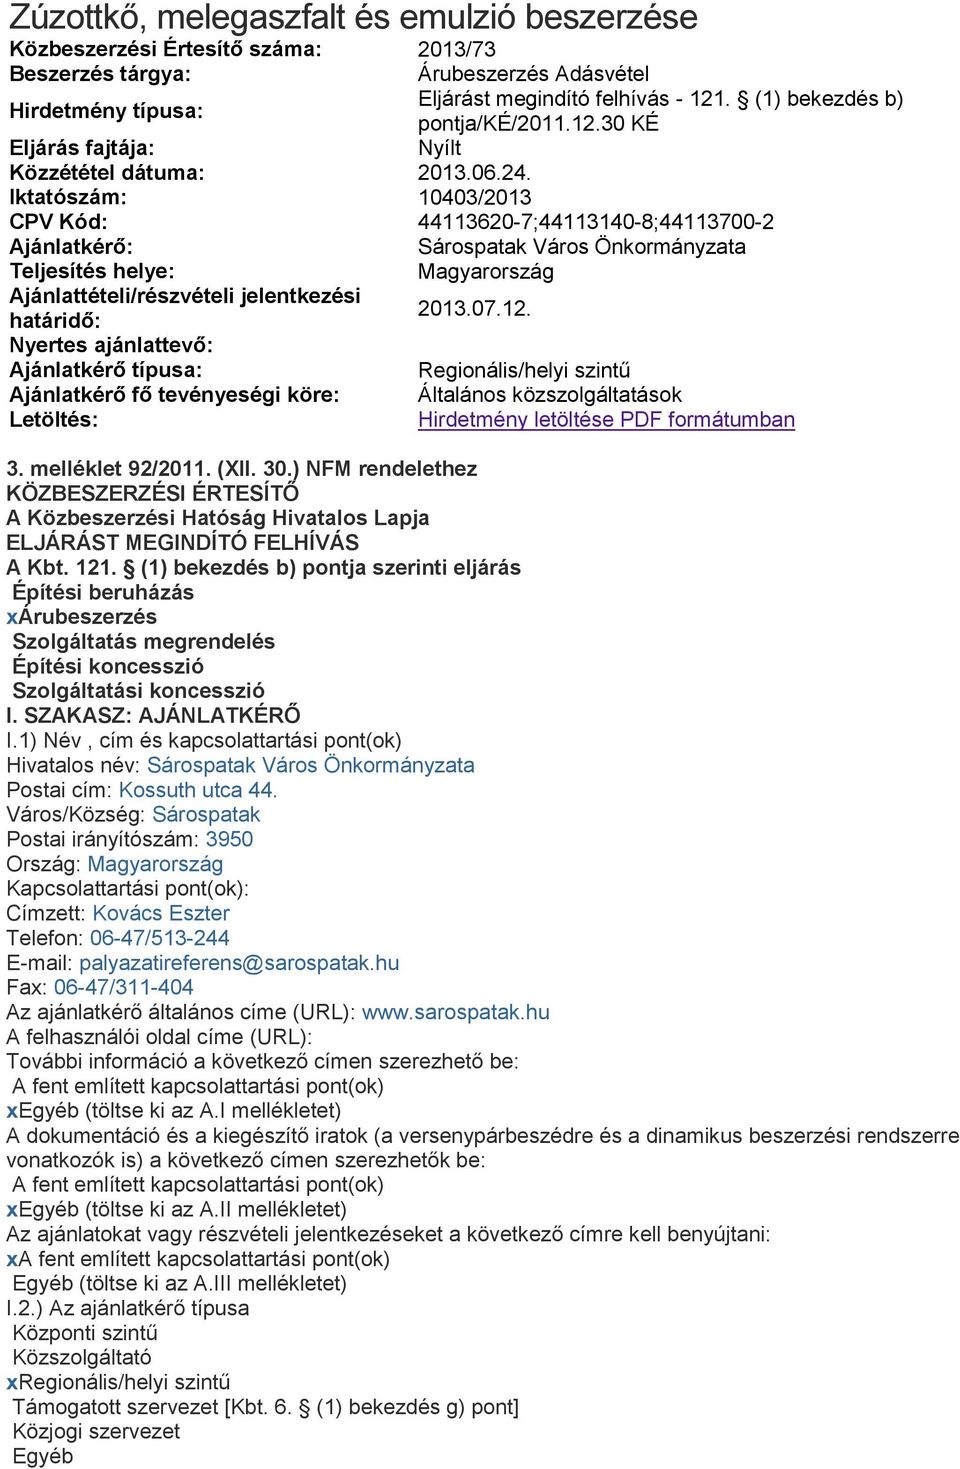 Iktatószám: 10403/2013 CPV Kód: 44113620-7;44113140-8;44113700-2 Ajánlatkérő: Sárospatak Város Önkormányzata Teljesítés helye: Magyarország Ajánlattételi/részvételi jelentkezési határidő: 2013.07.12.